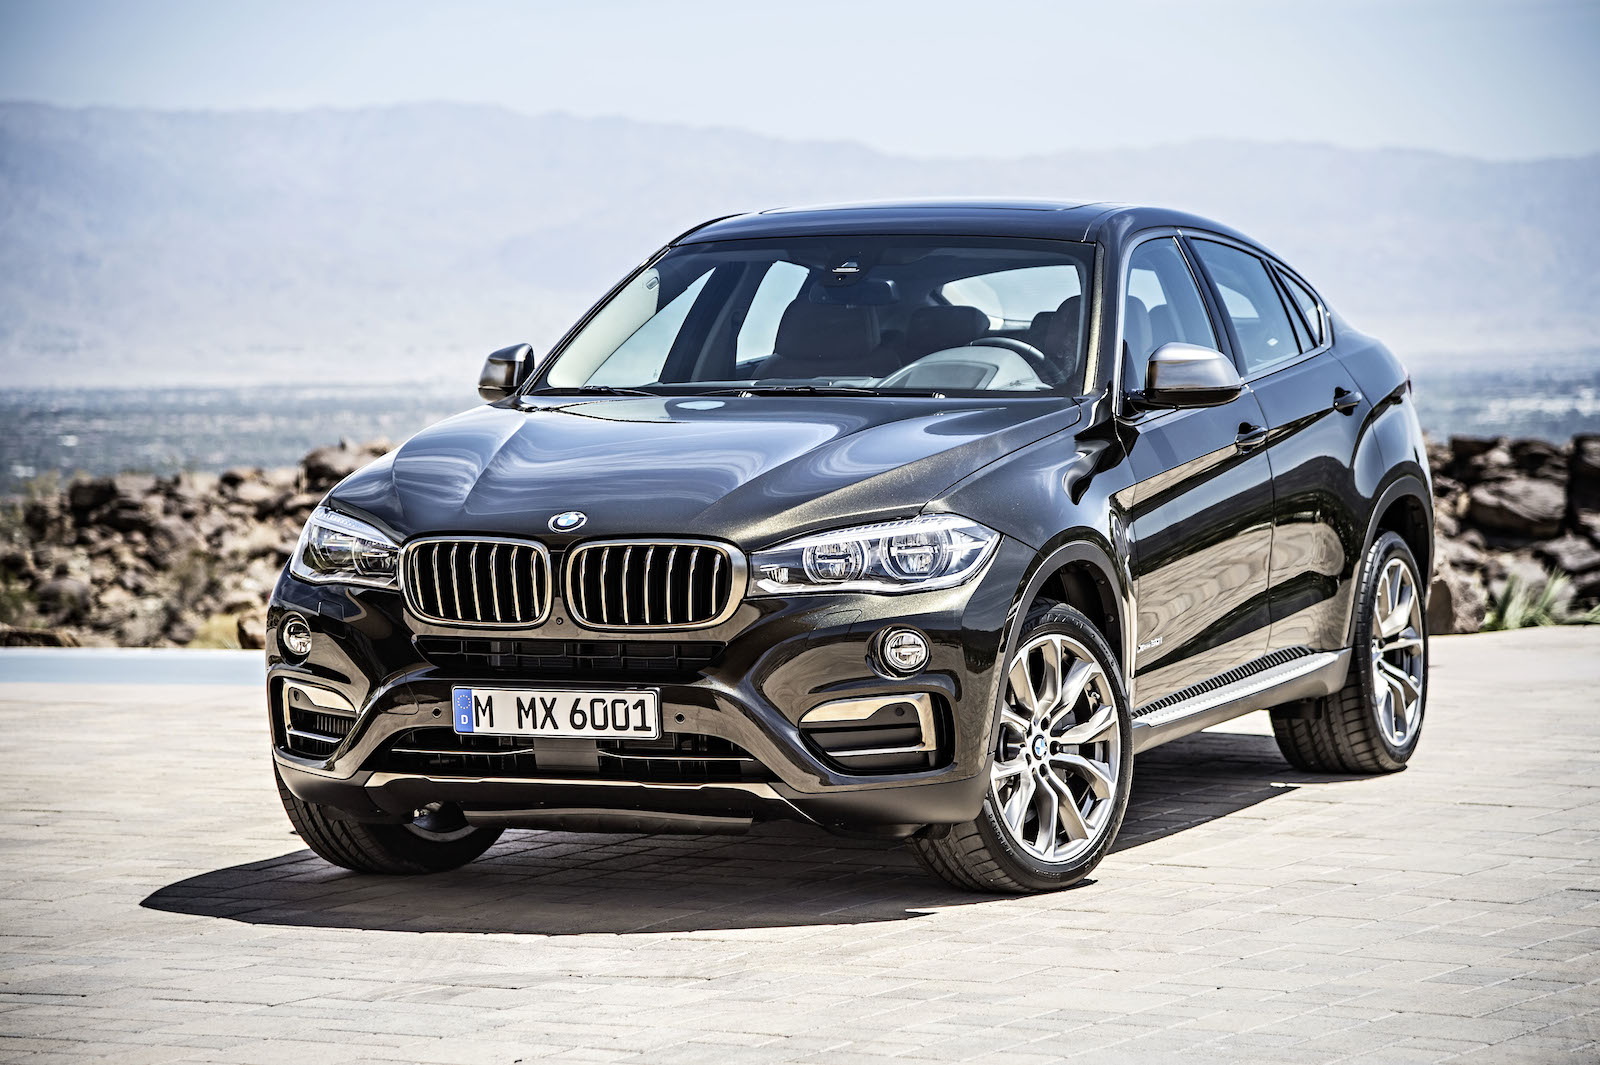 Siêu phẩm BMW X6 2015 có giá 60,550 USD